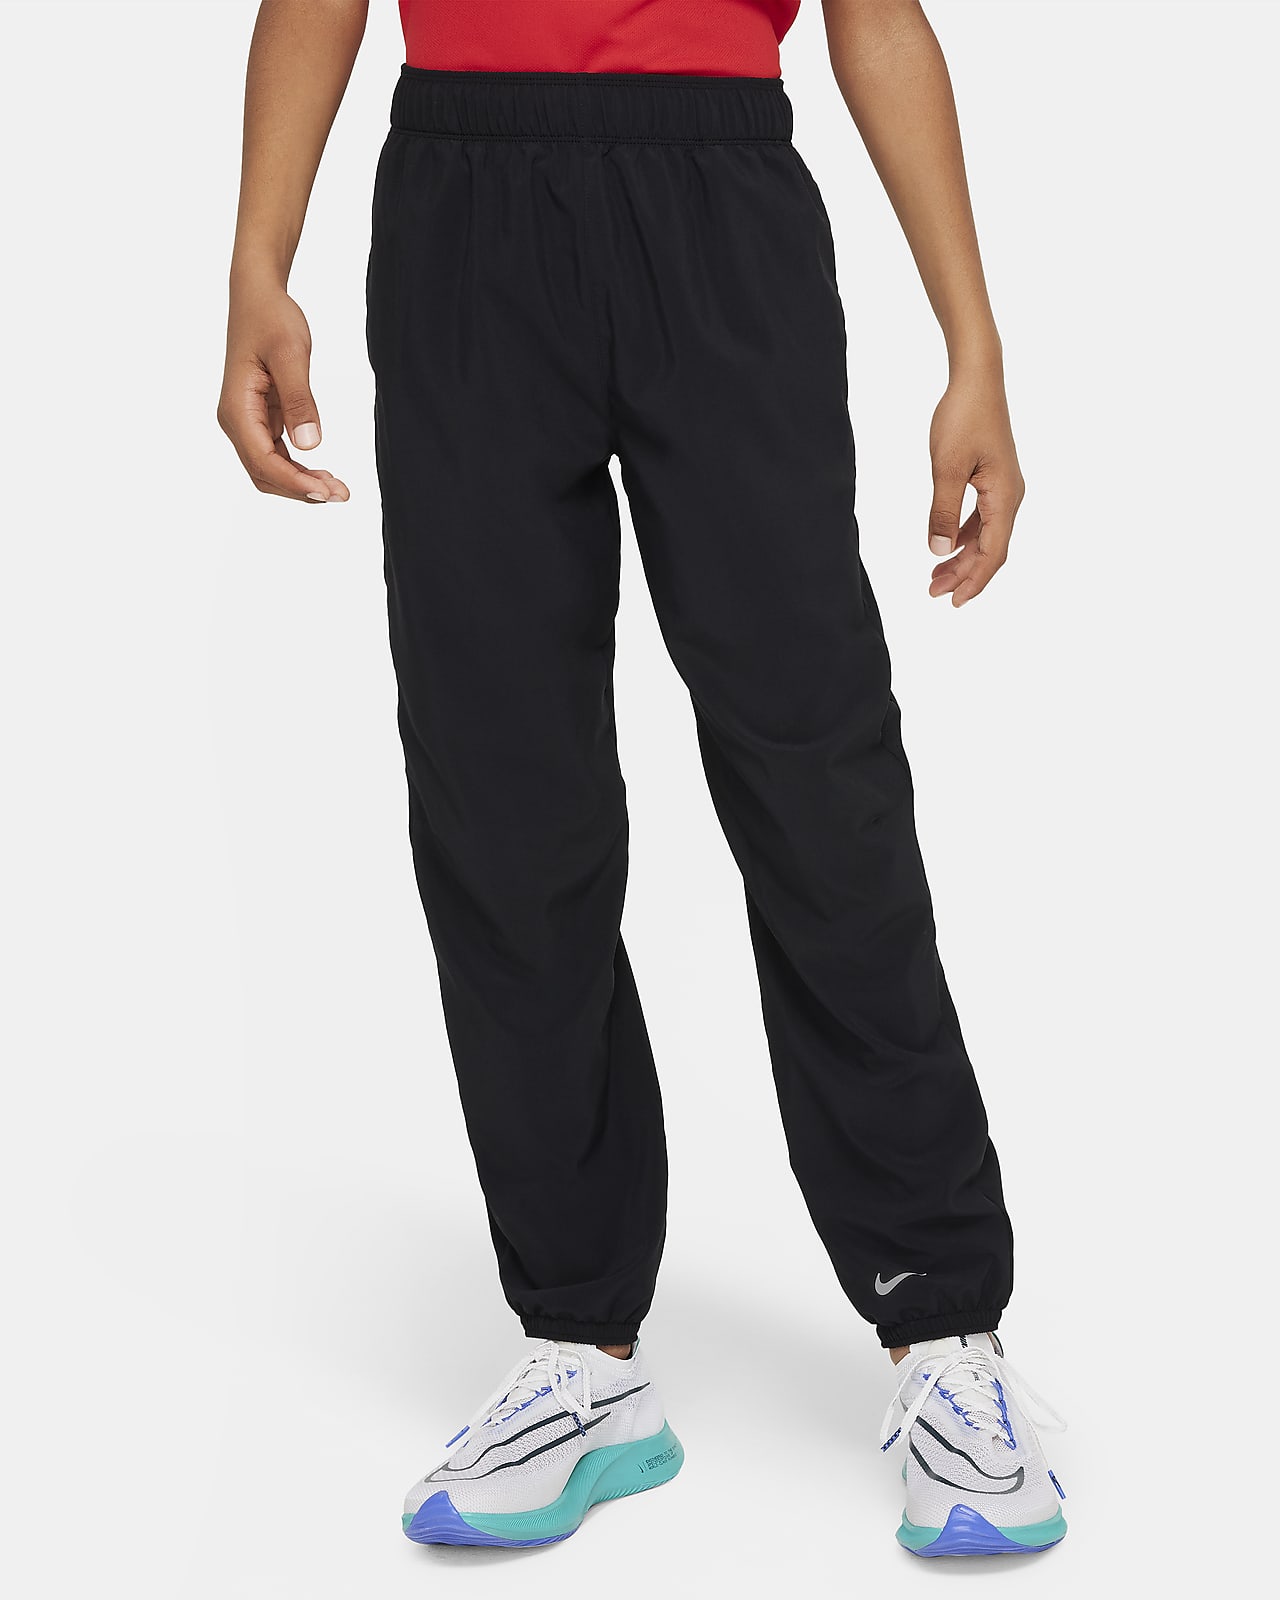 Pantalon Nike Dri-FIT Multi pour ado (garçon)